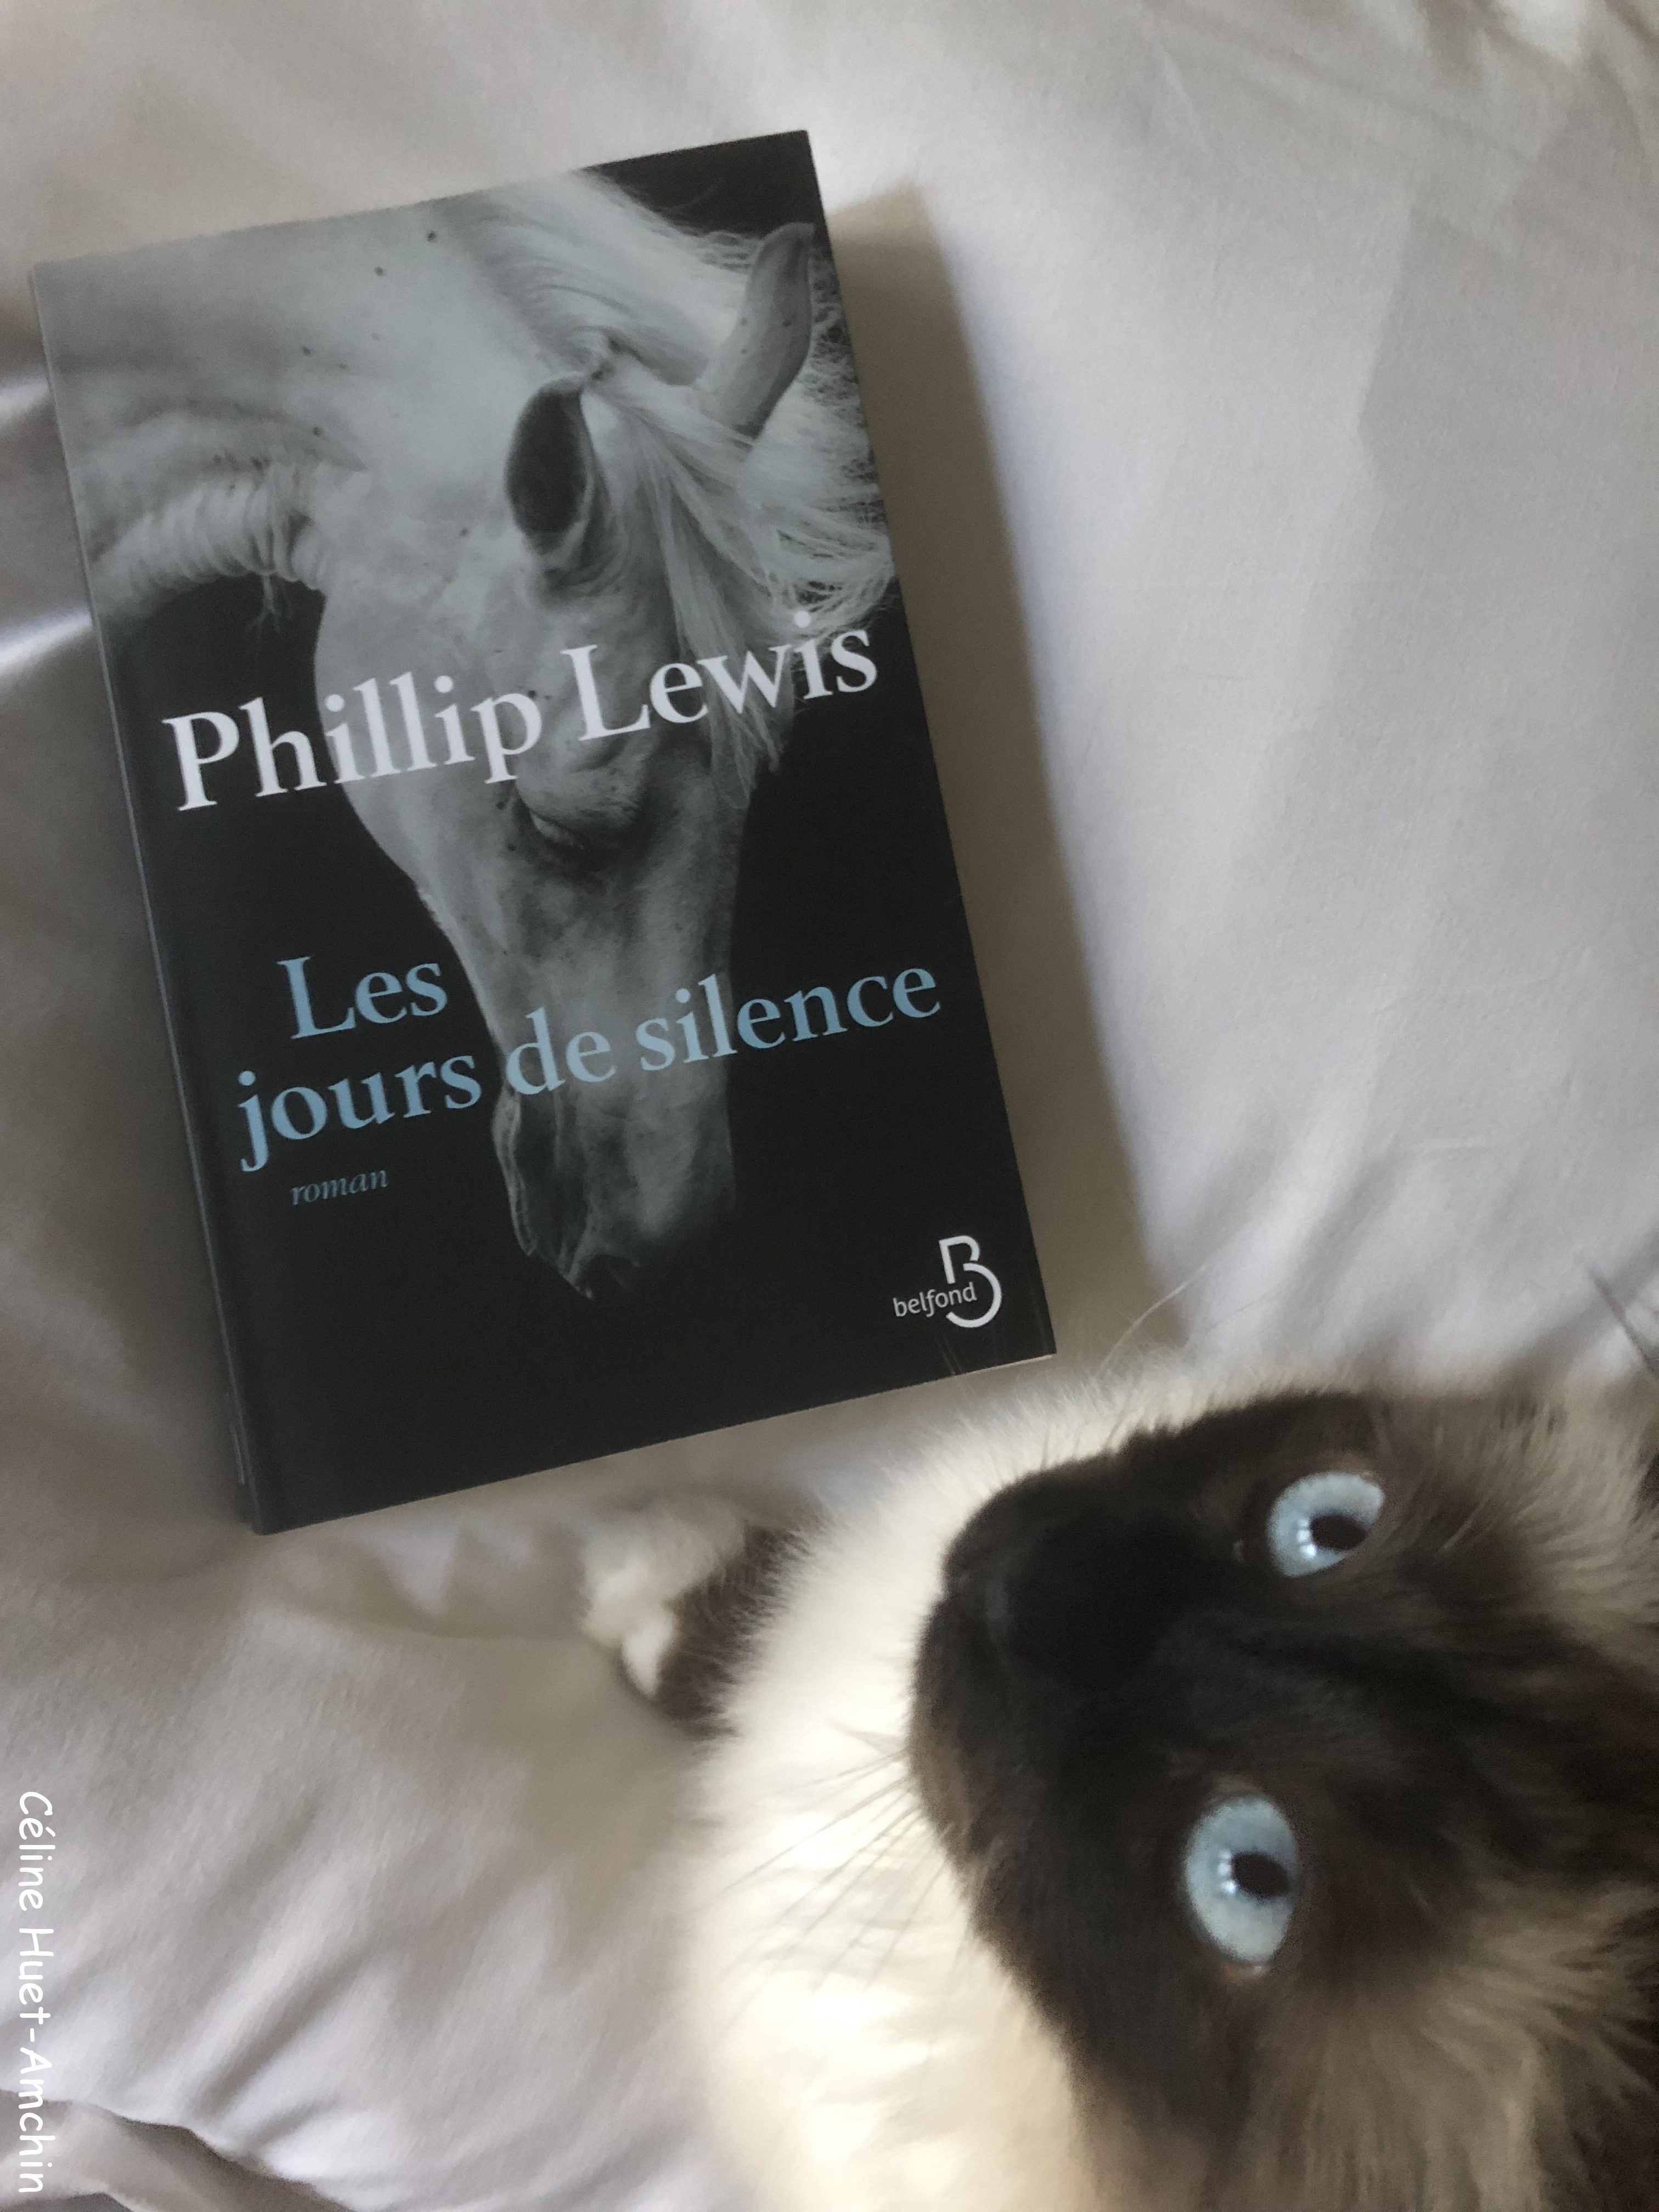 Les jours de silence Phillip Lewis Editions Belfond